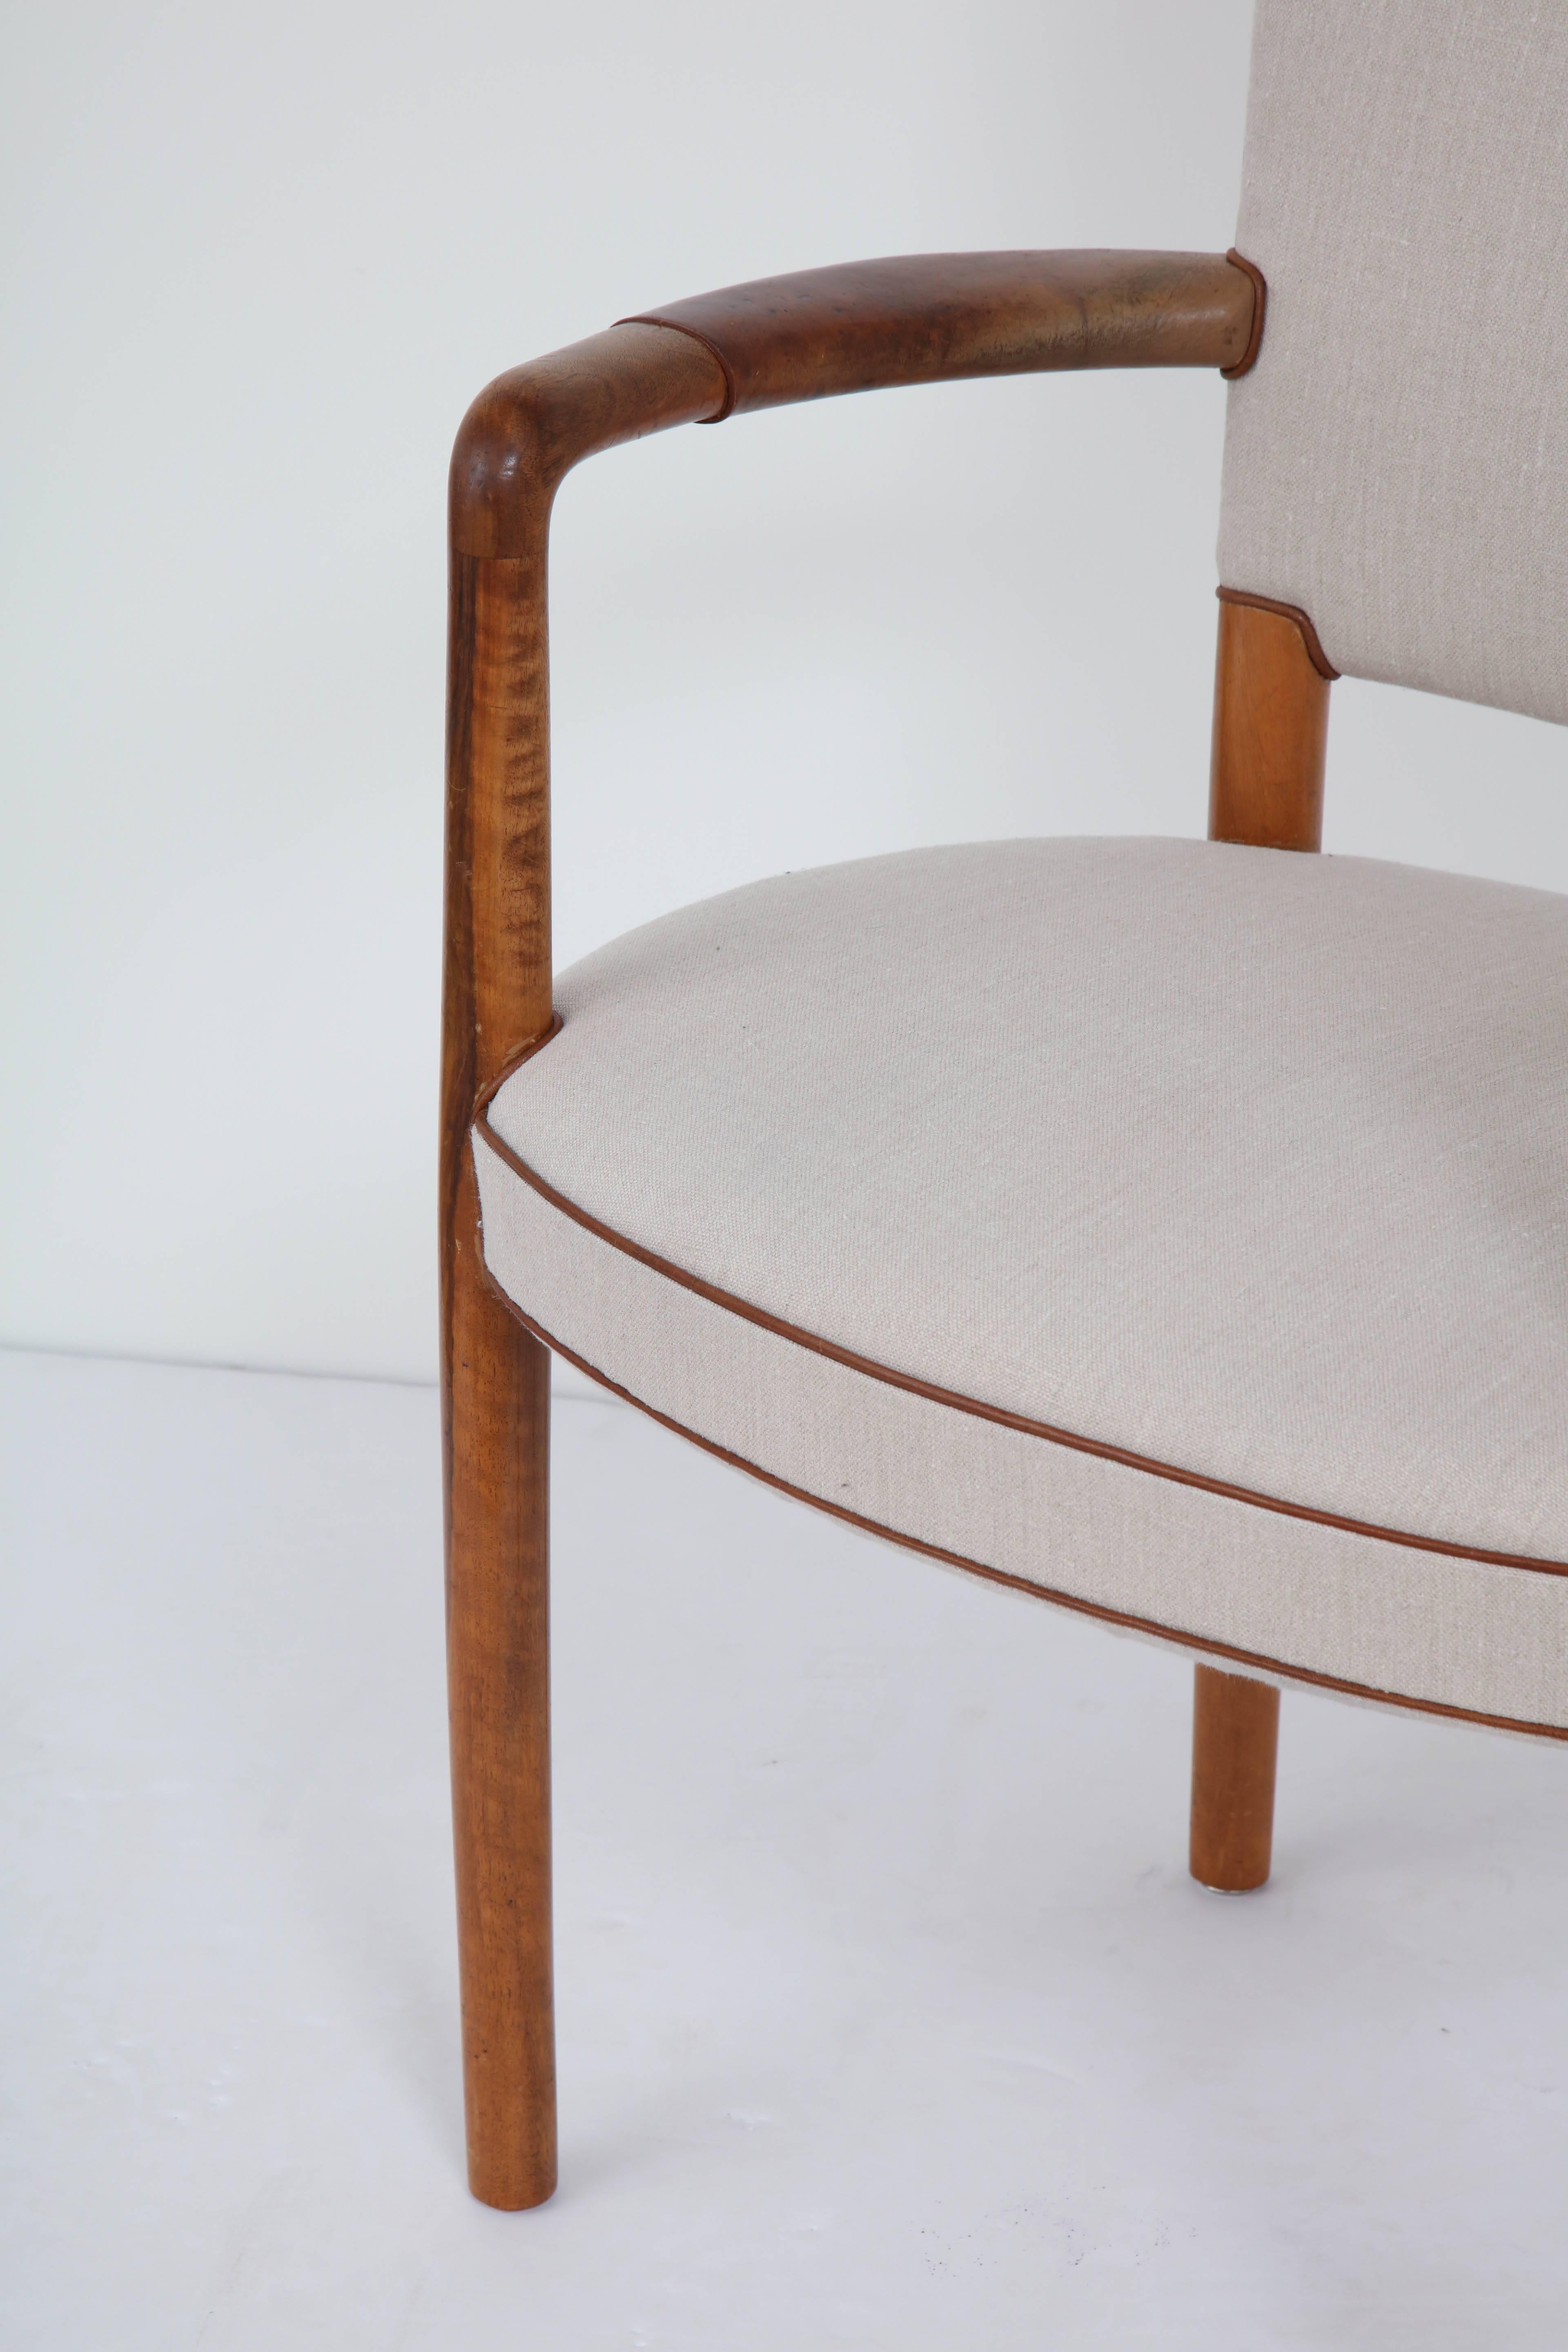 Scandinavian Modern Rare Danish Design Chair by Flemming Lassen and Arne Jacobsen, circa 1950s